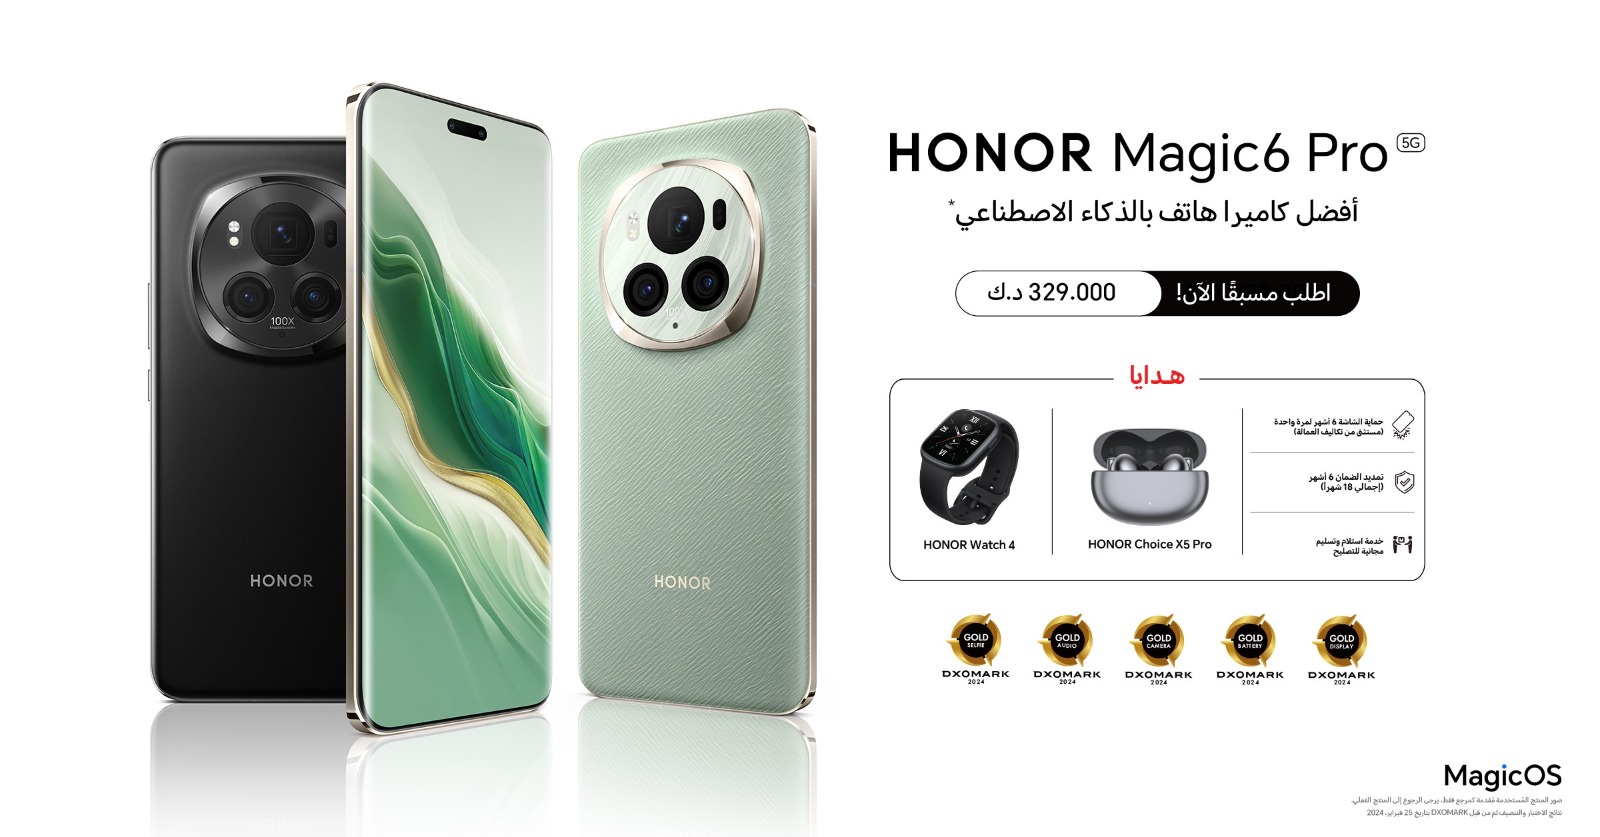  شركة honor الكويت تحتفل بالغبقة الرمضانية وتعلن عن إطلاق أحدث هواتفها الذكية honor magic6 pro